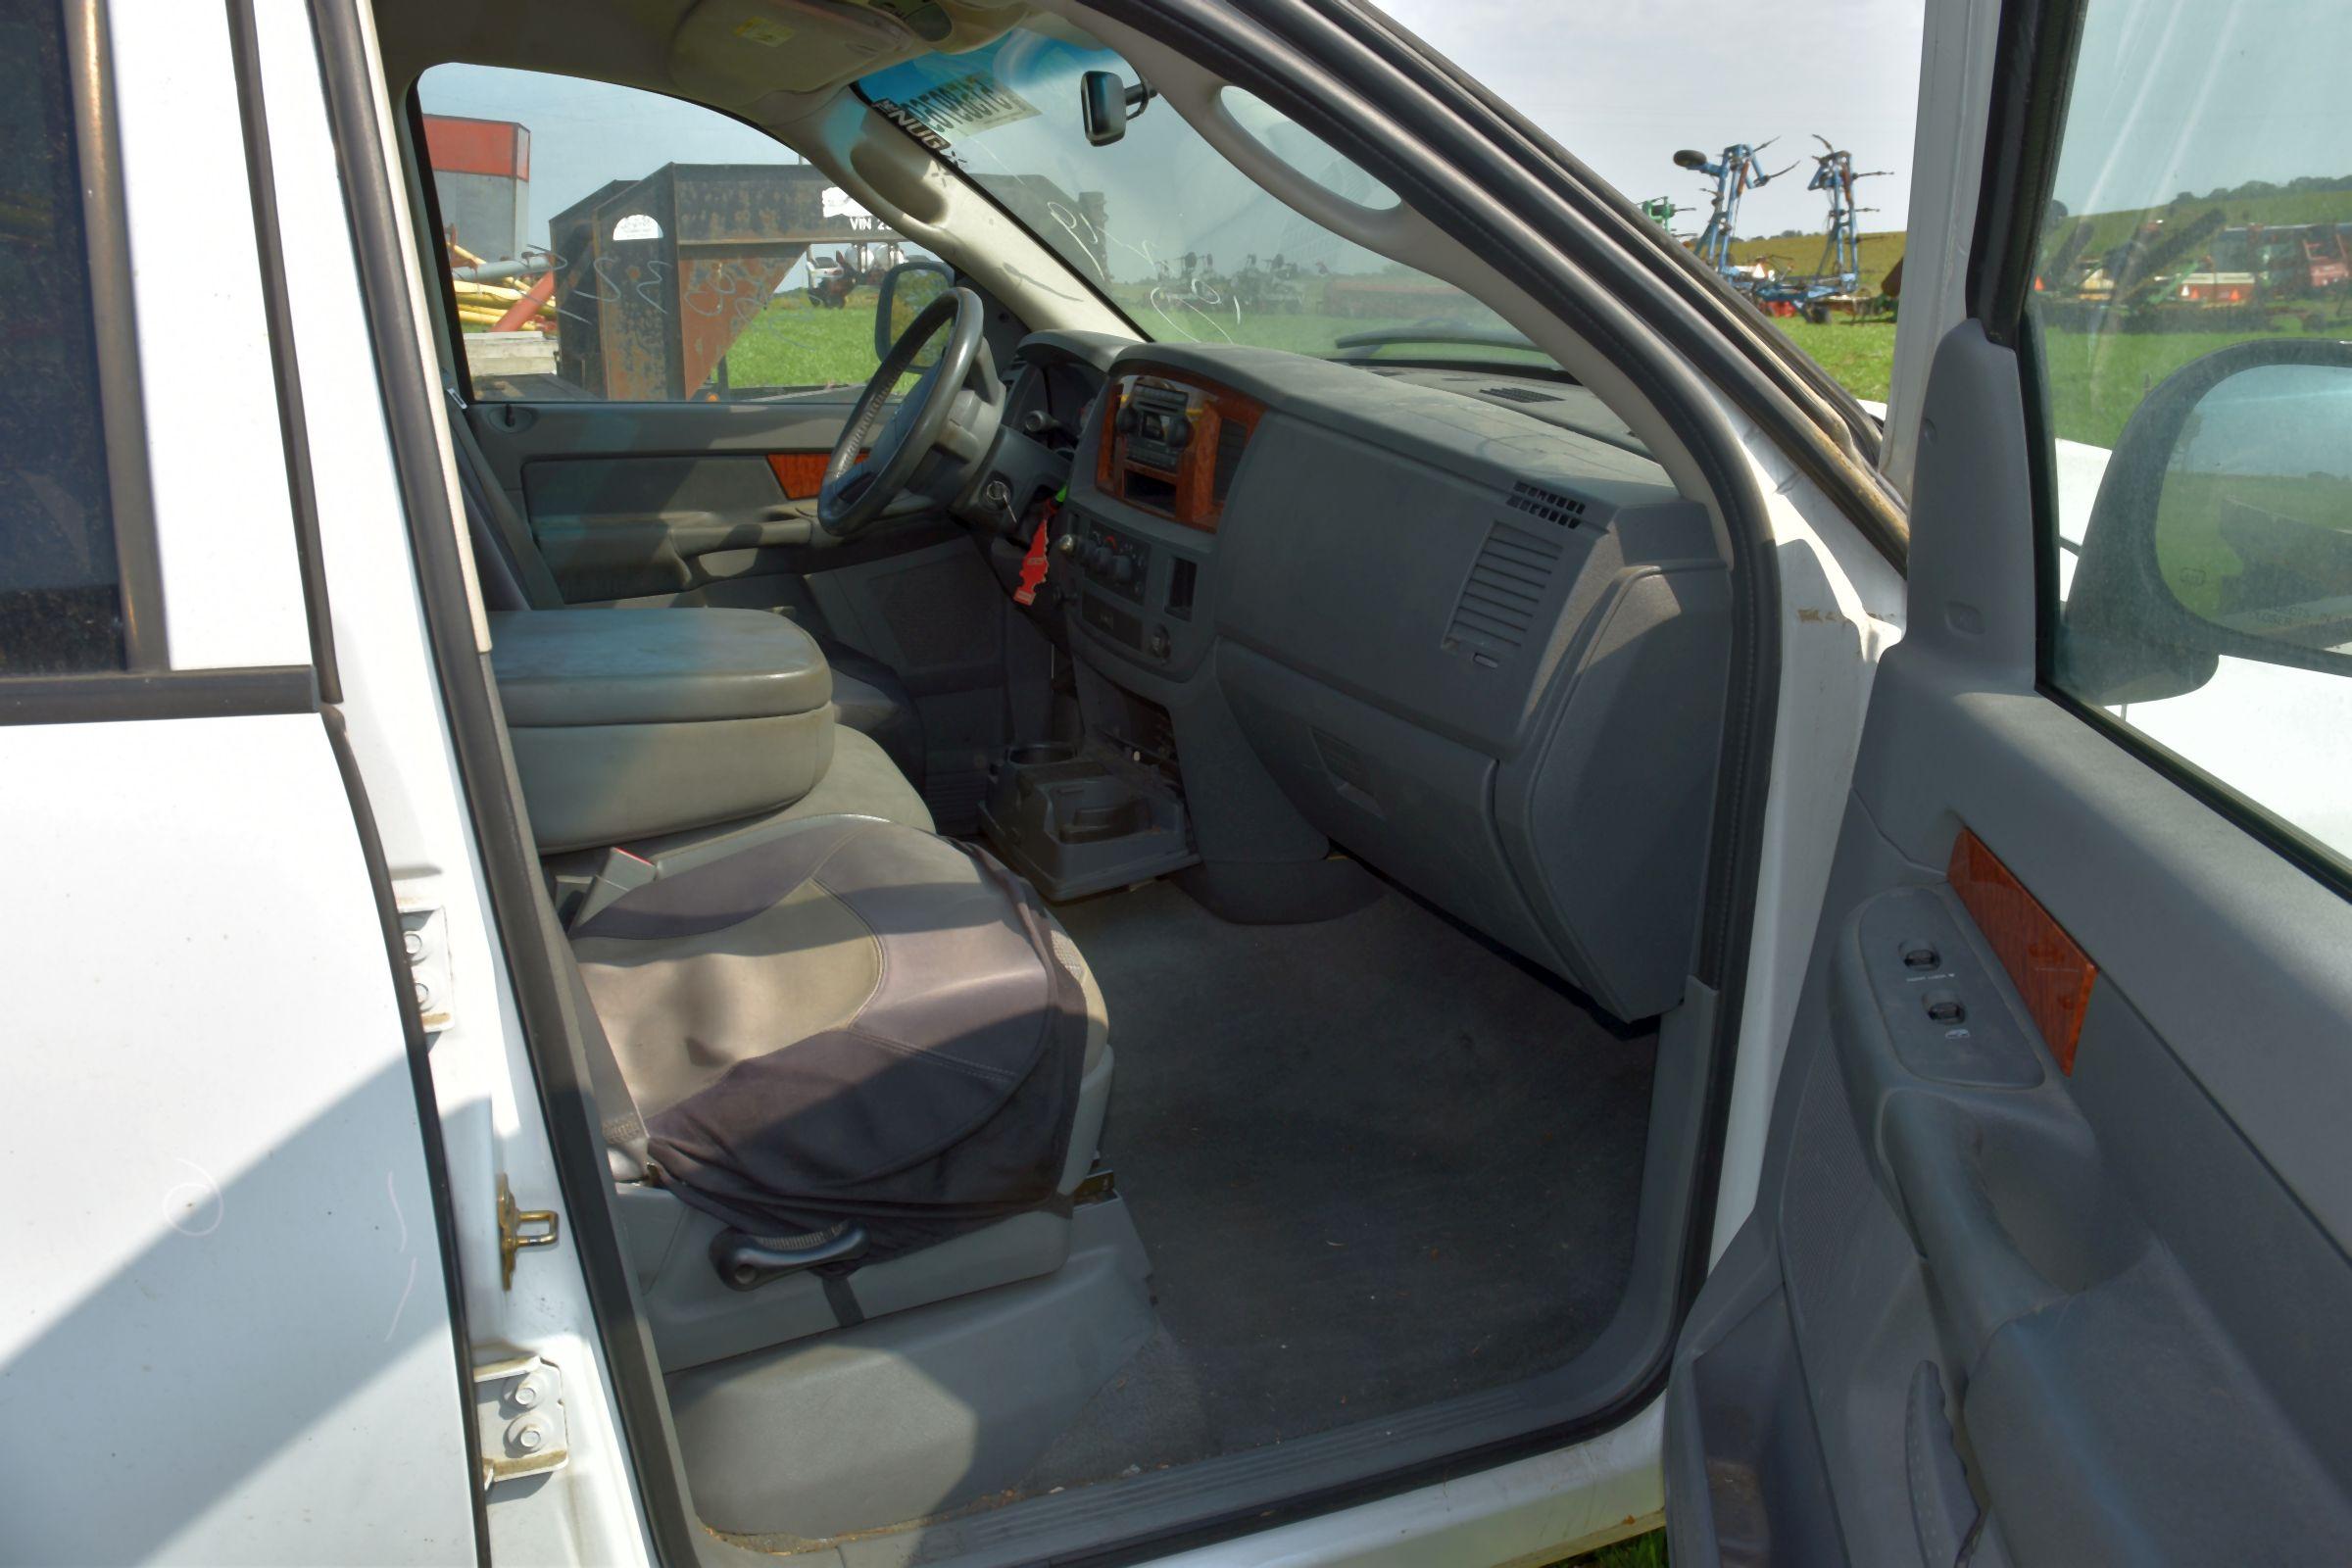 2006 Dodge 5.7 Hemi Crew Cab, 2WD, 358,332 Miles, Runs & Drives, Parts Truck, NO TITLE